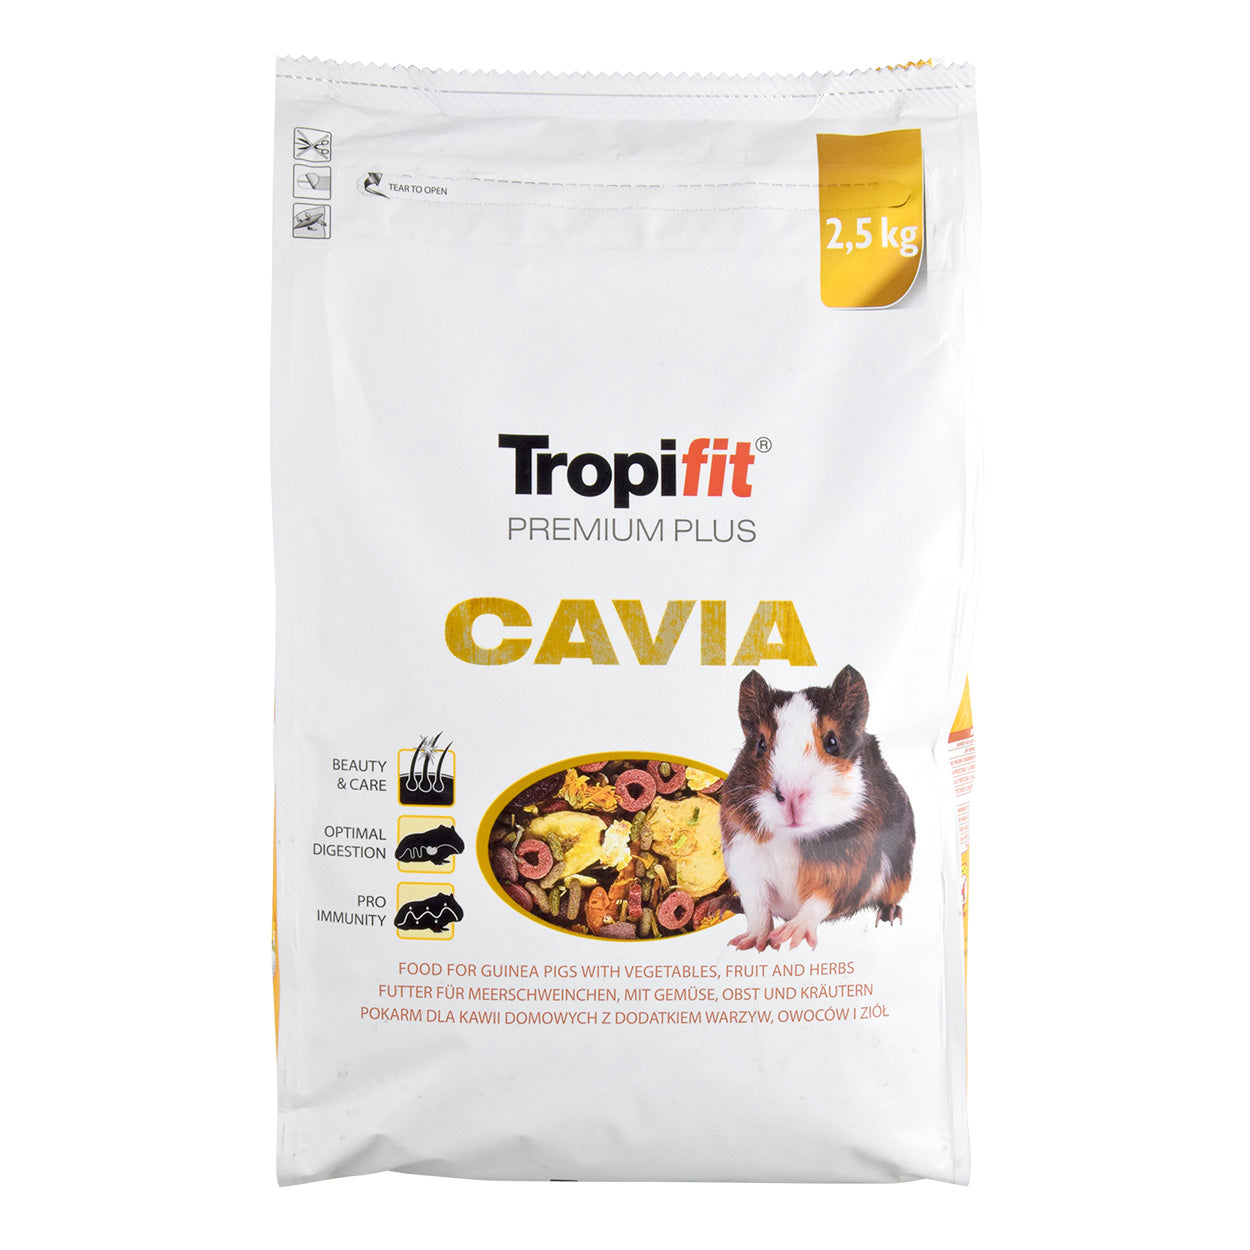 Tropifit Premium Plus Cavia - 2.5kg